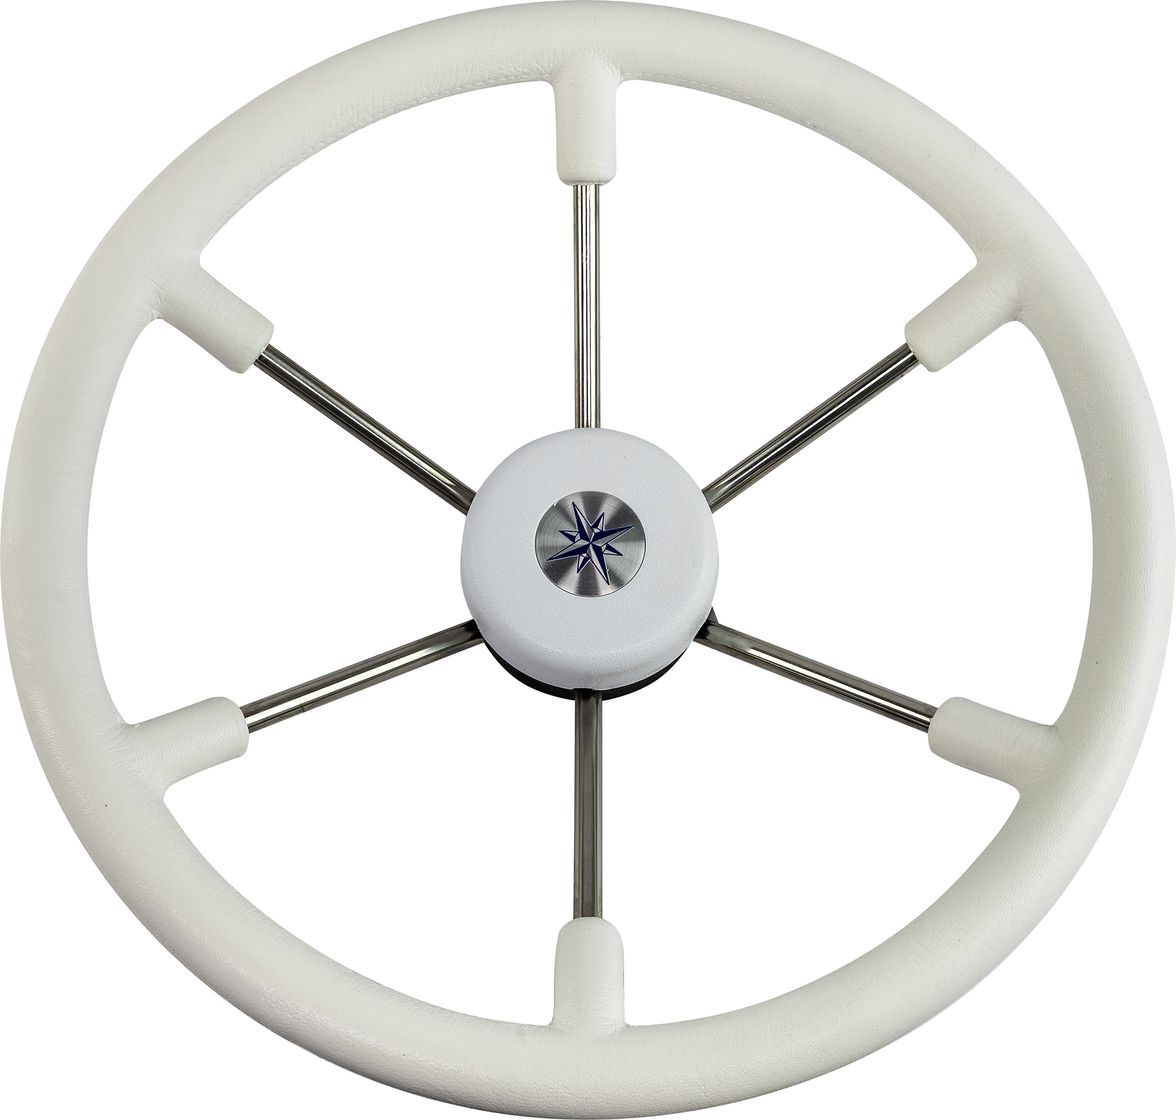 Рулевое колесо LEADER TANEGUM белый обод серебряные спицы д. 400 мм VN7400-08 рулевое колесо riviera белый обод и спицы д 350 мм vn8001 08